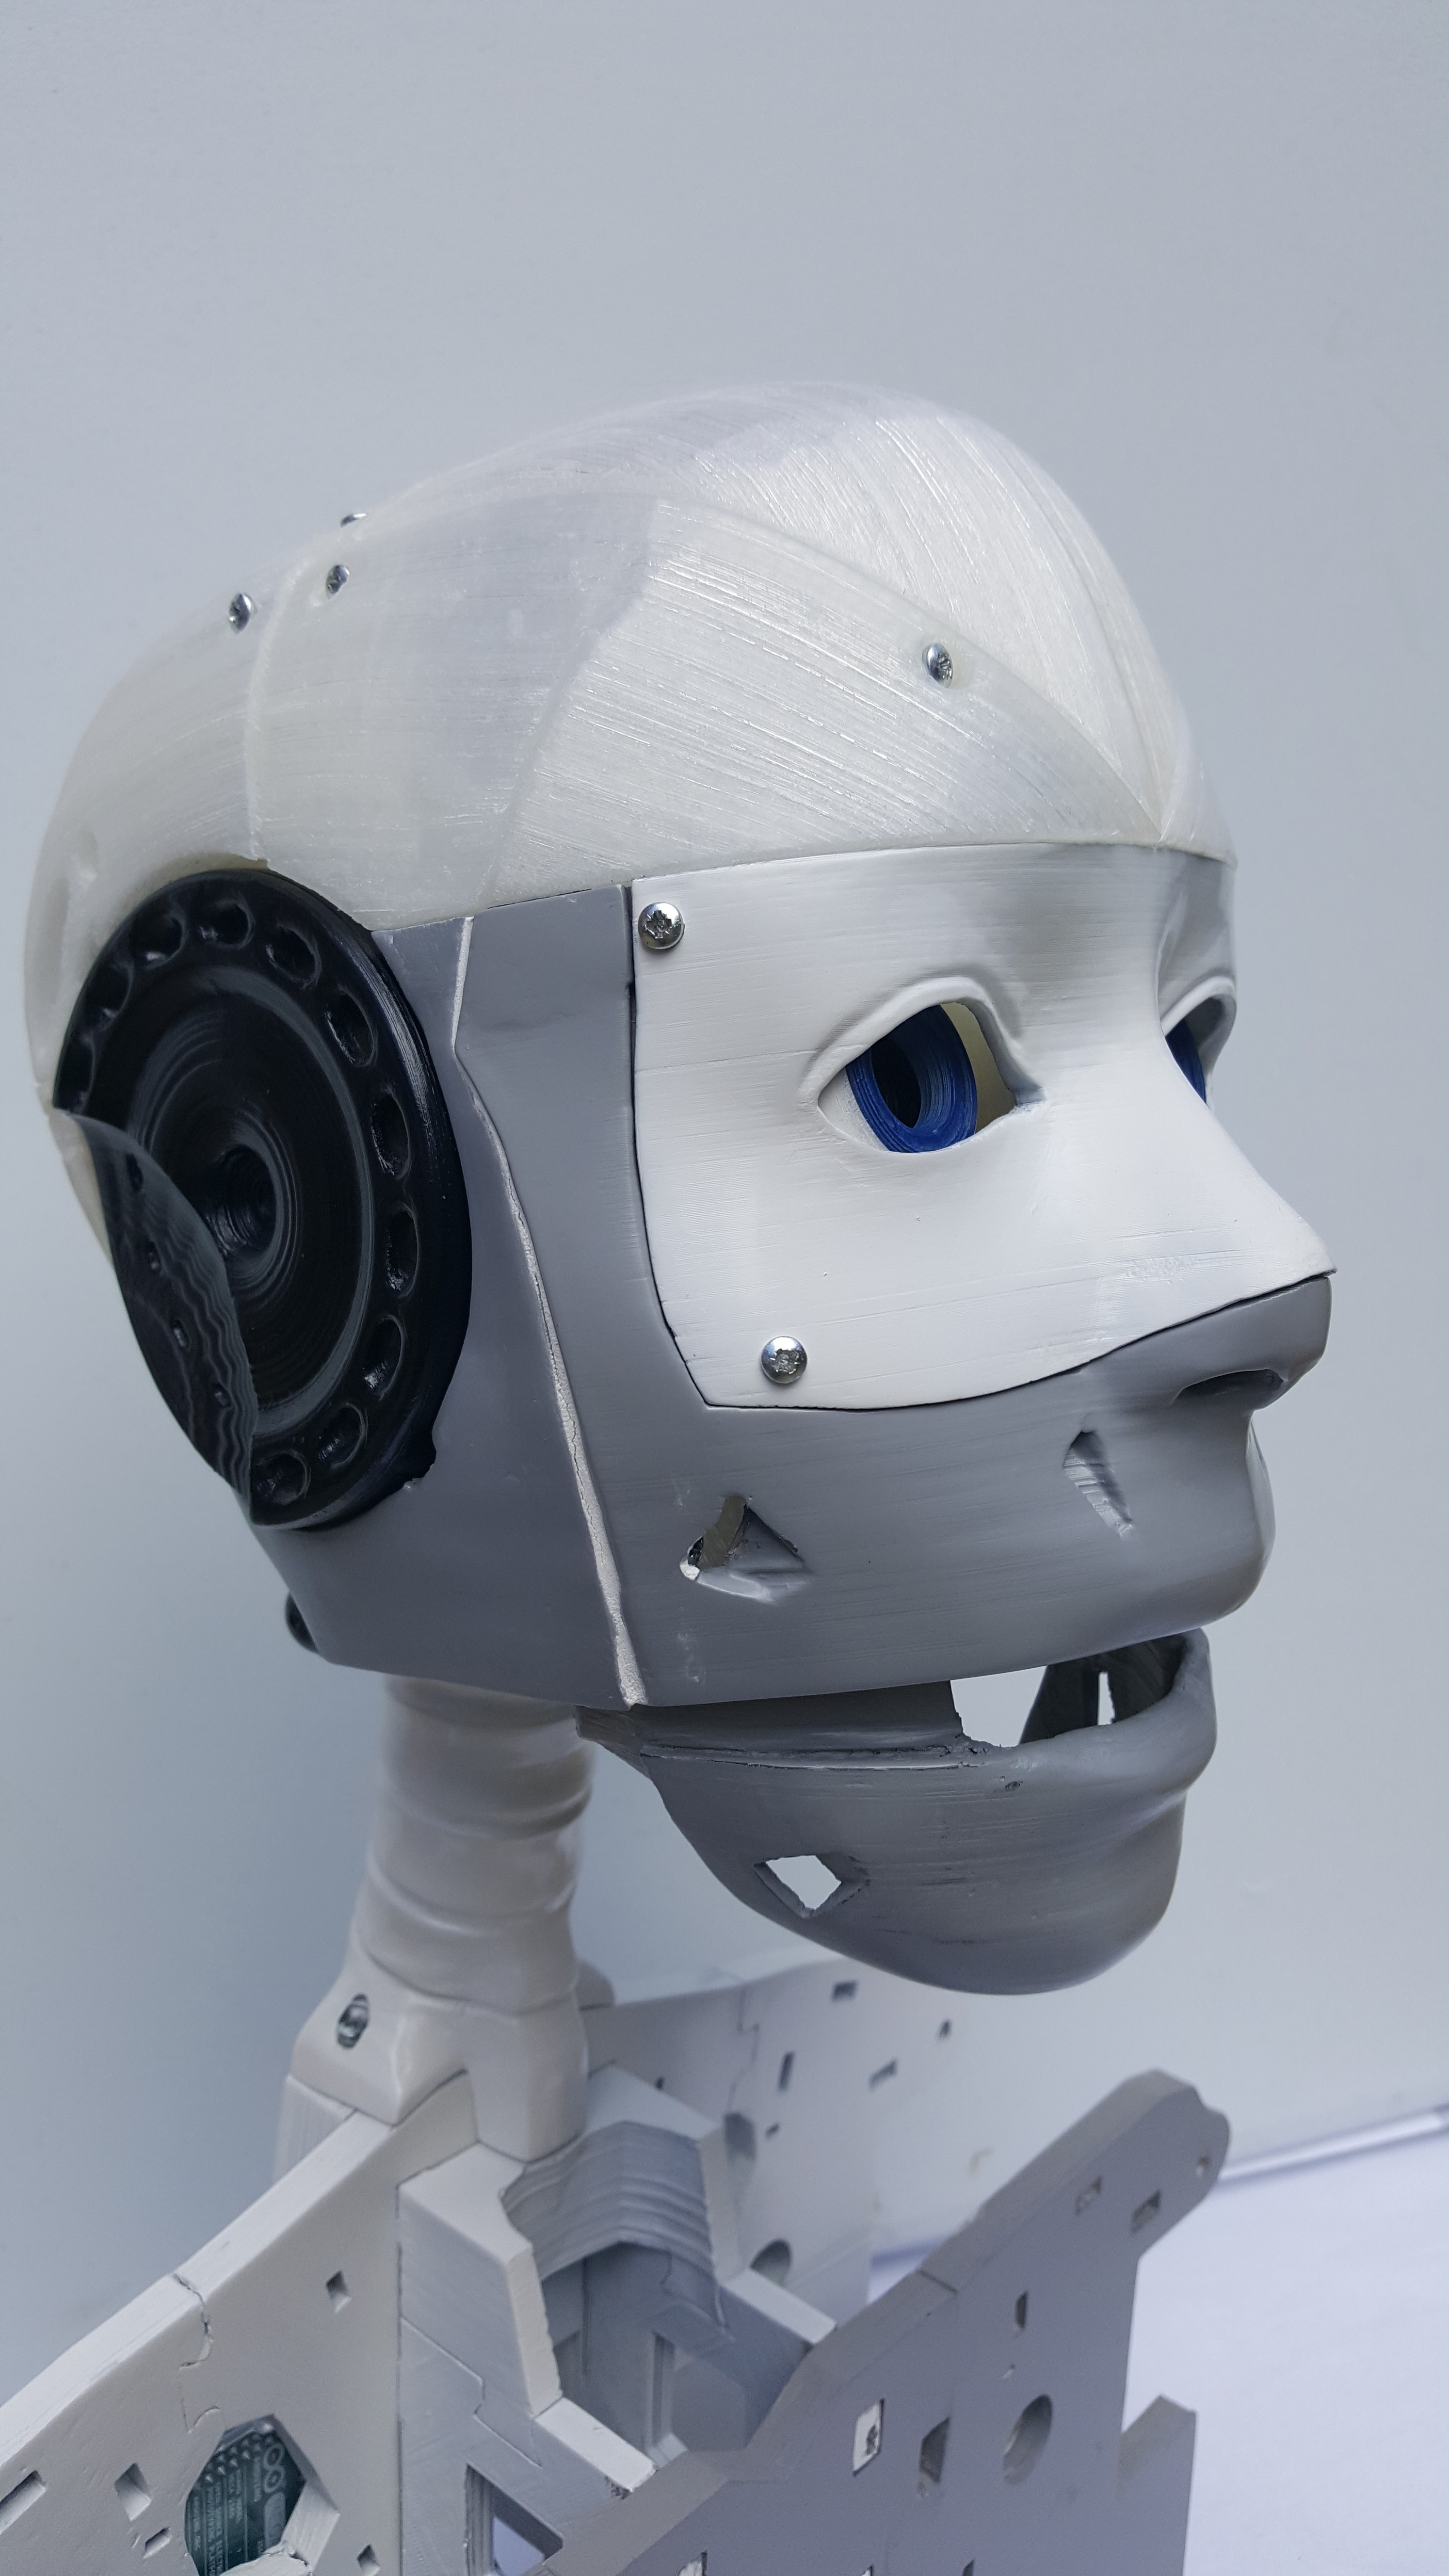 assembled robot head